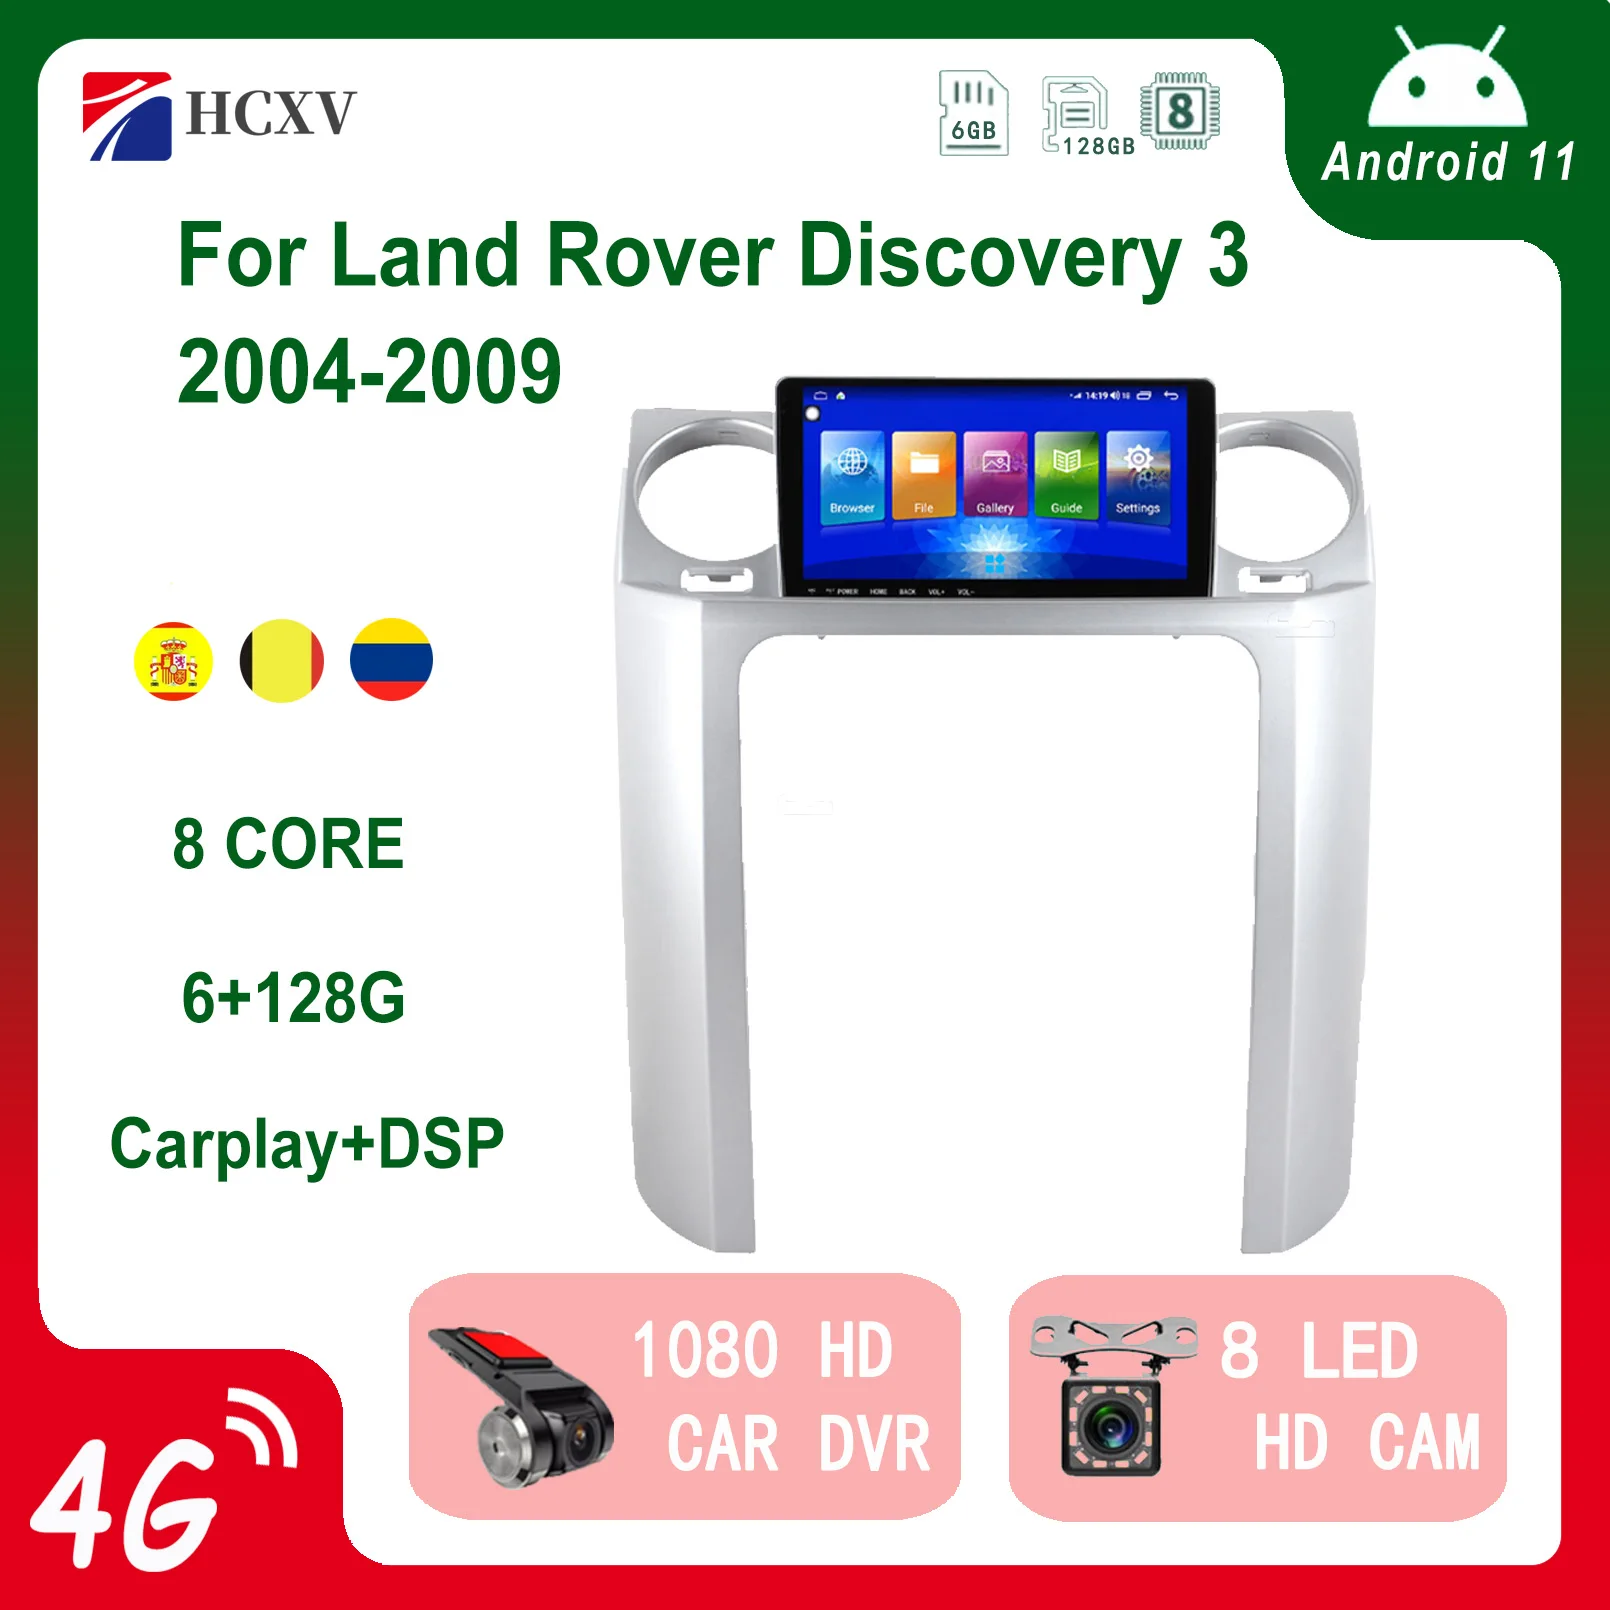 

Автомобильный радиоприемник HCXV, Android-плеер для Land Rover Discovery 3, автомобильная стереосистема Carplay, интеллектуальная система, DVD, мультимедиа, GPS-н...